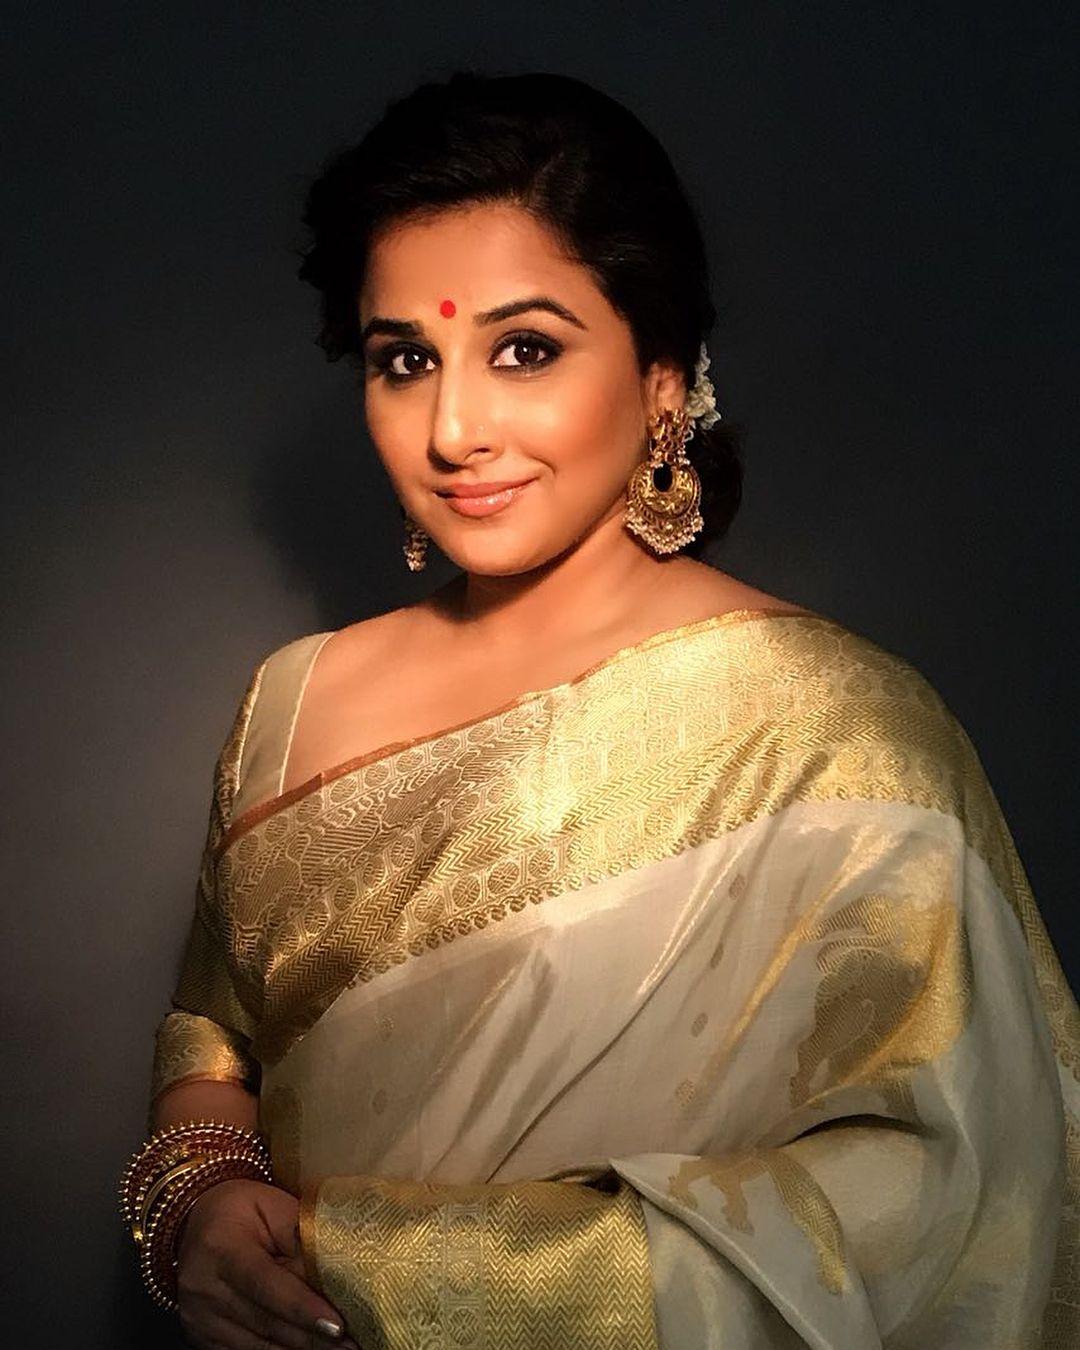 Actress Vidya Balan Latest Saree Photos Stills